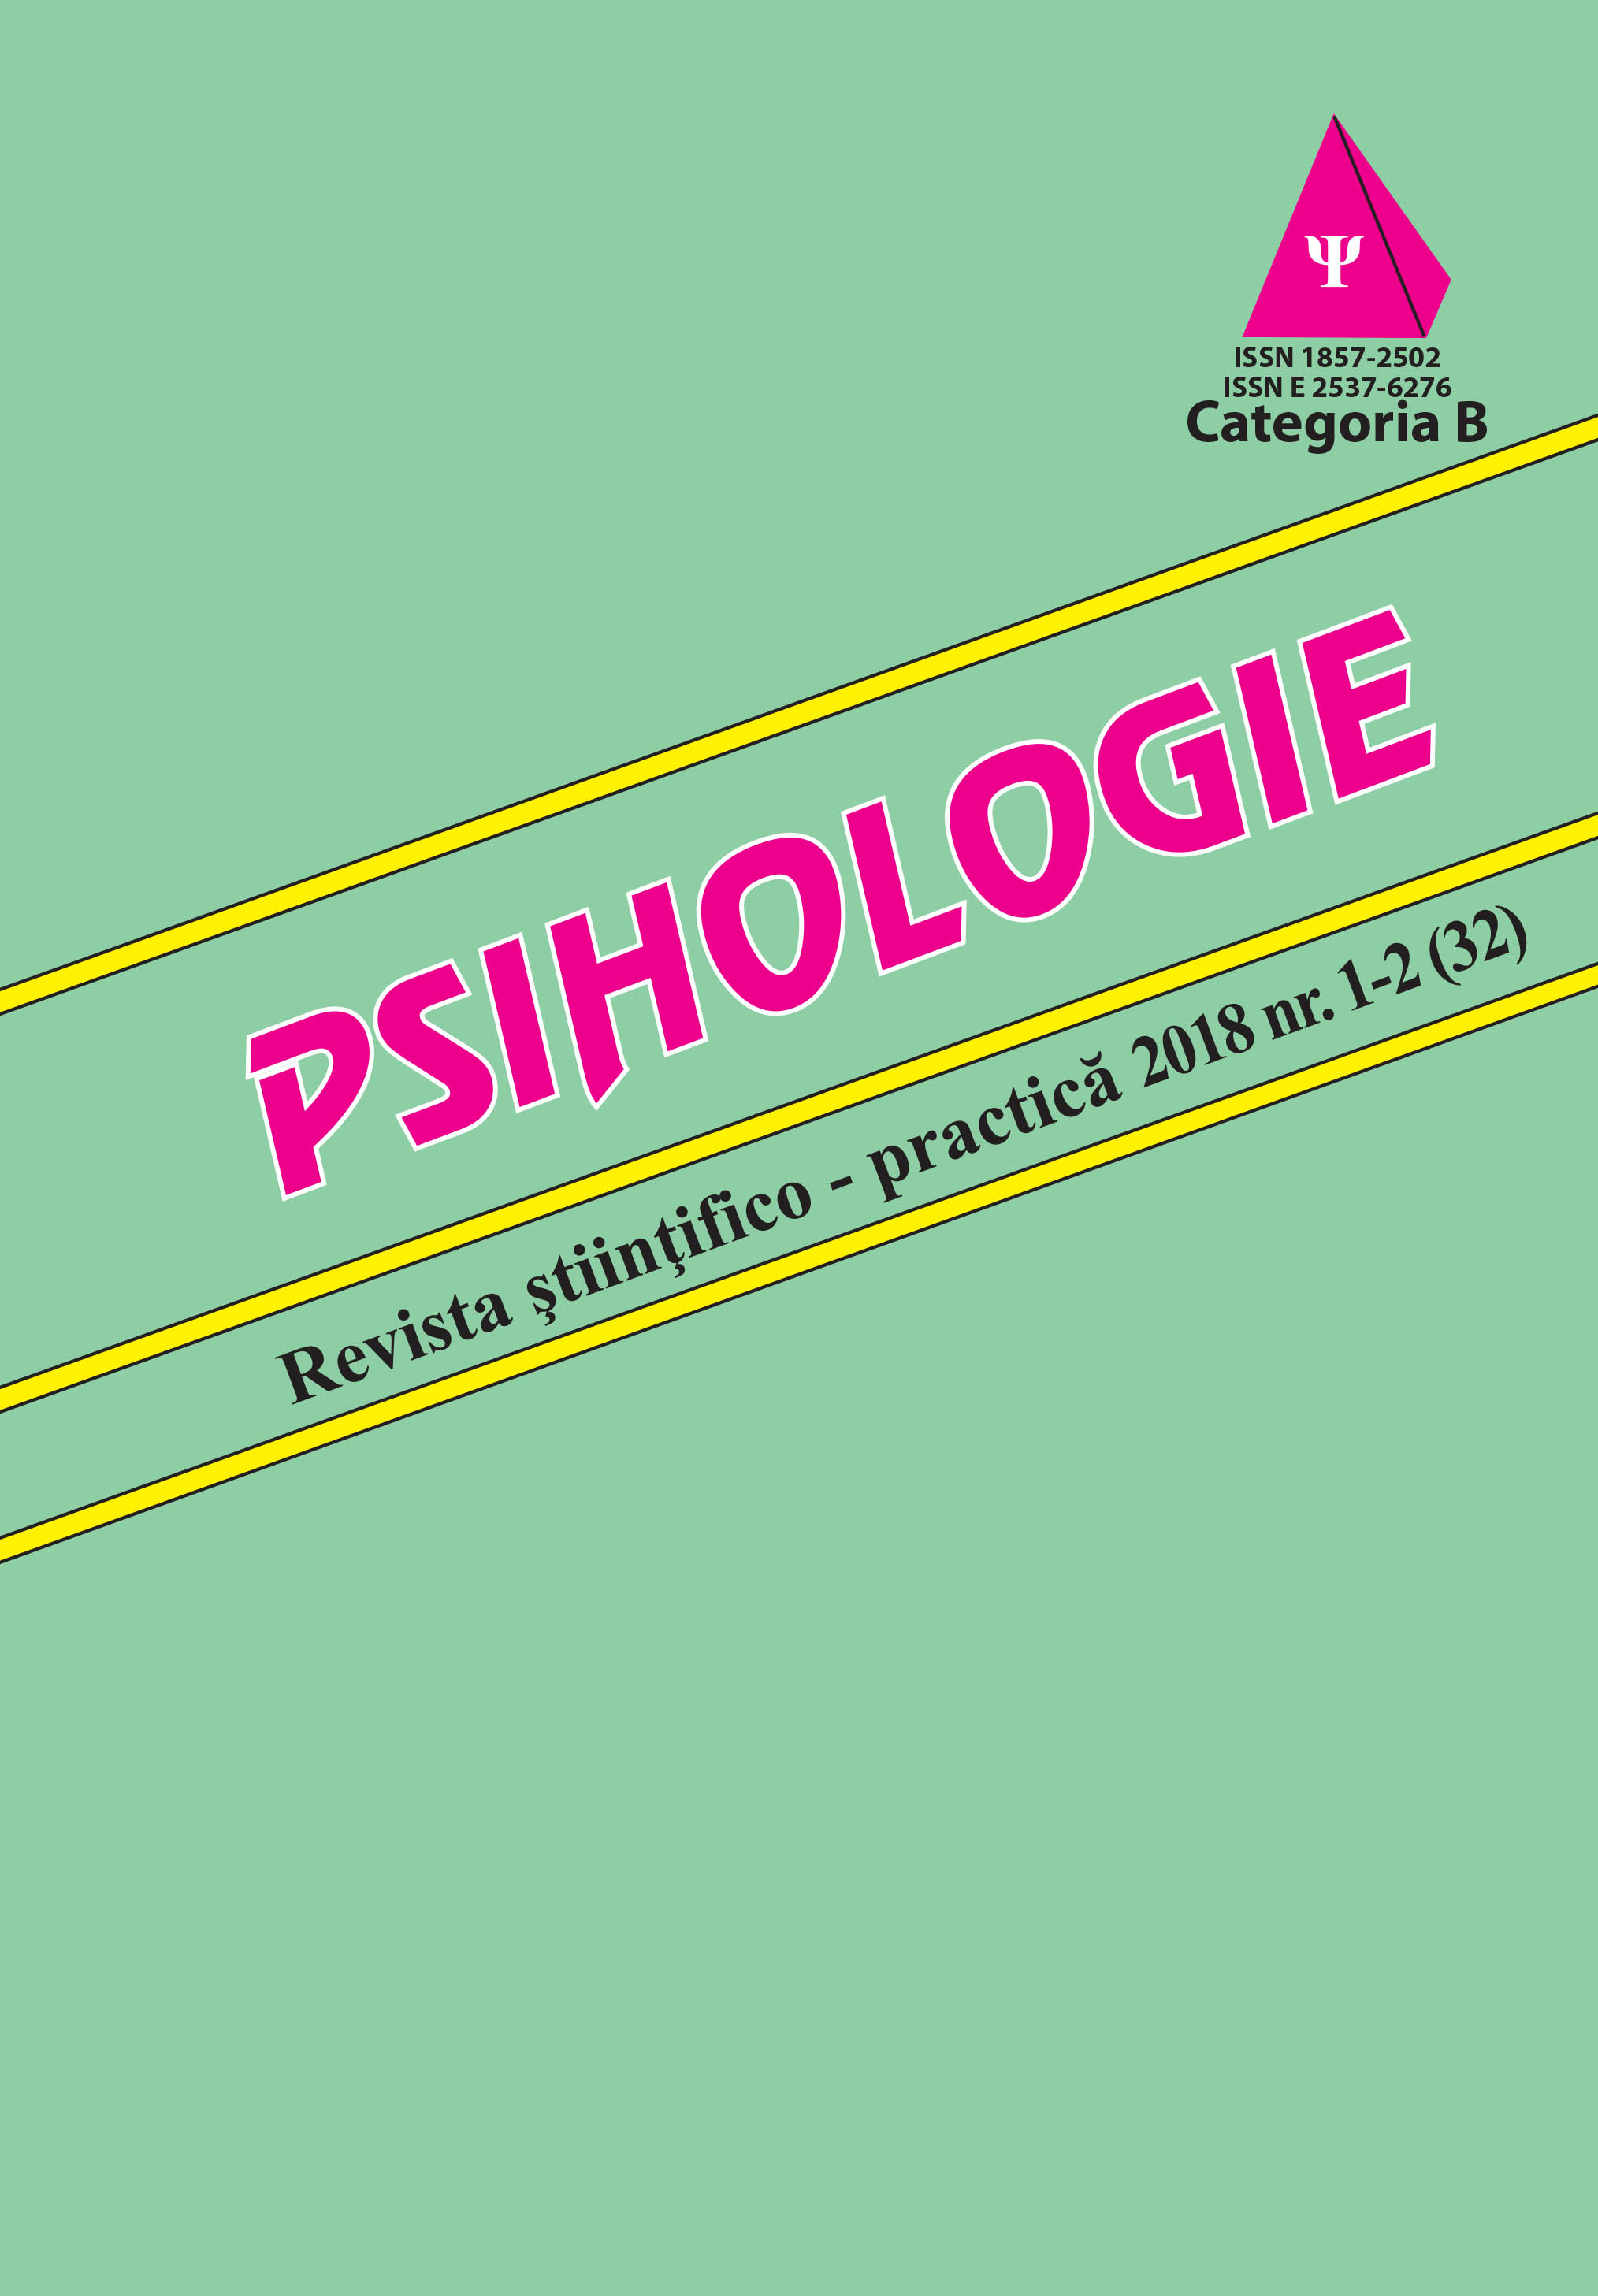 Psihologie, Revistă ştiinţifico-practică